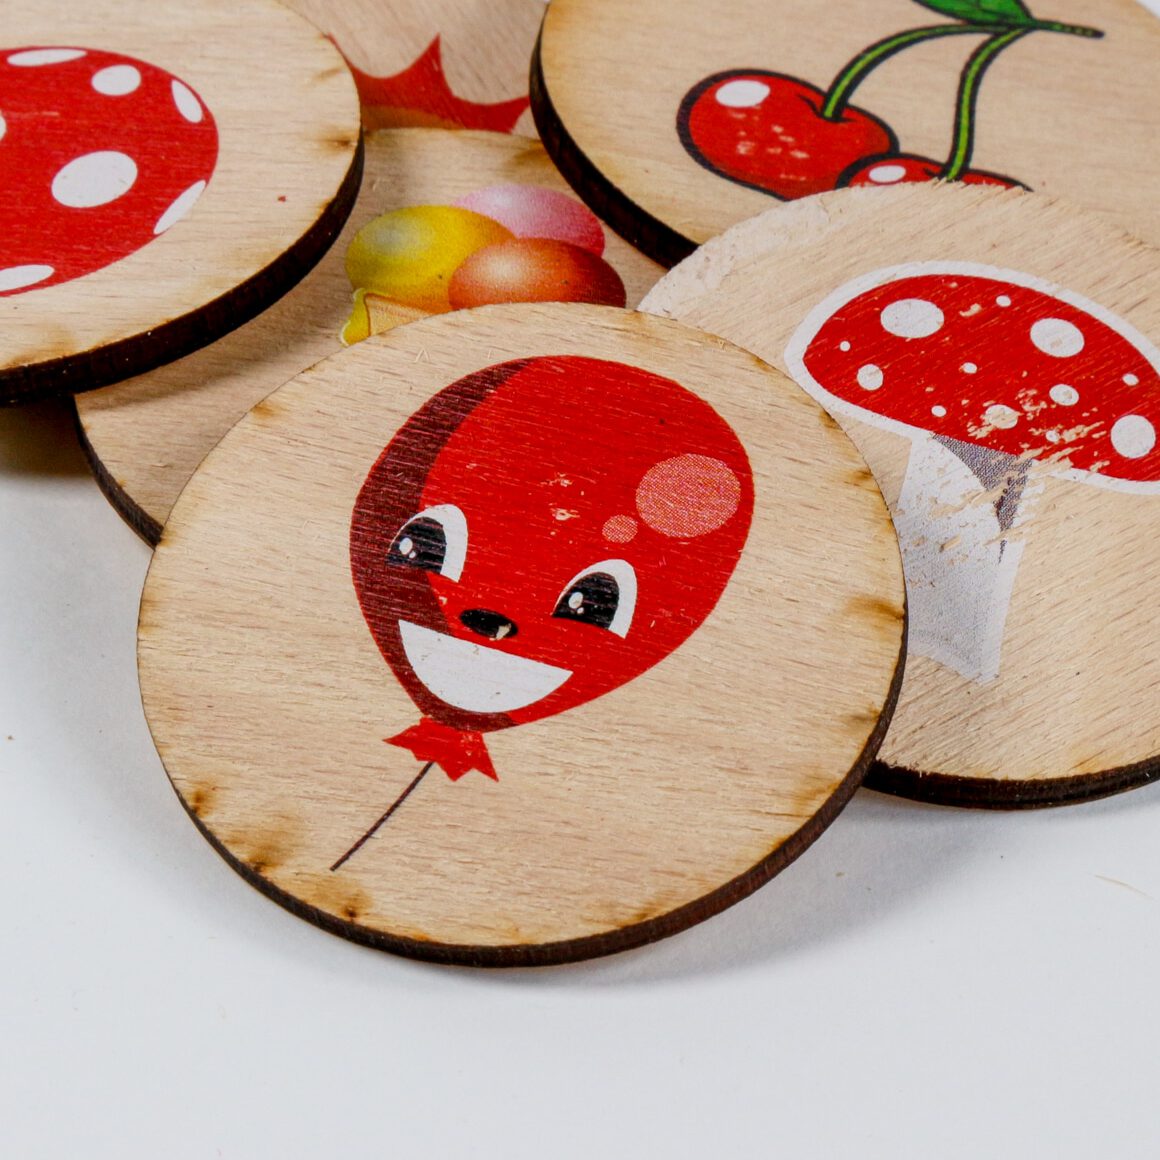 Színes ovis jelek fa táblácskákon. Látható egy lufi, gomba, cseresznye, fagyi és labda.